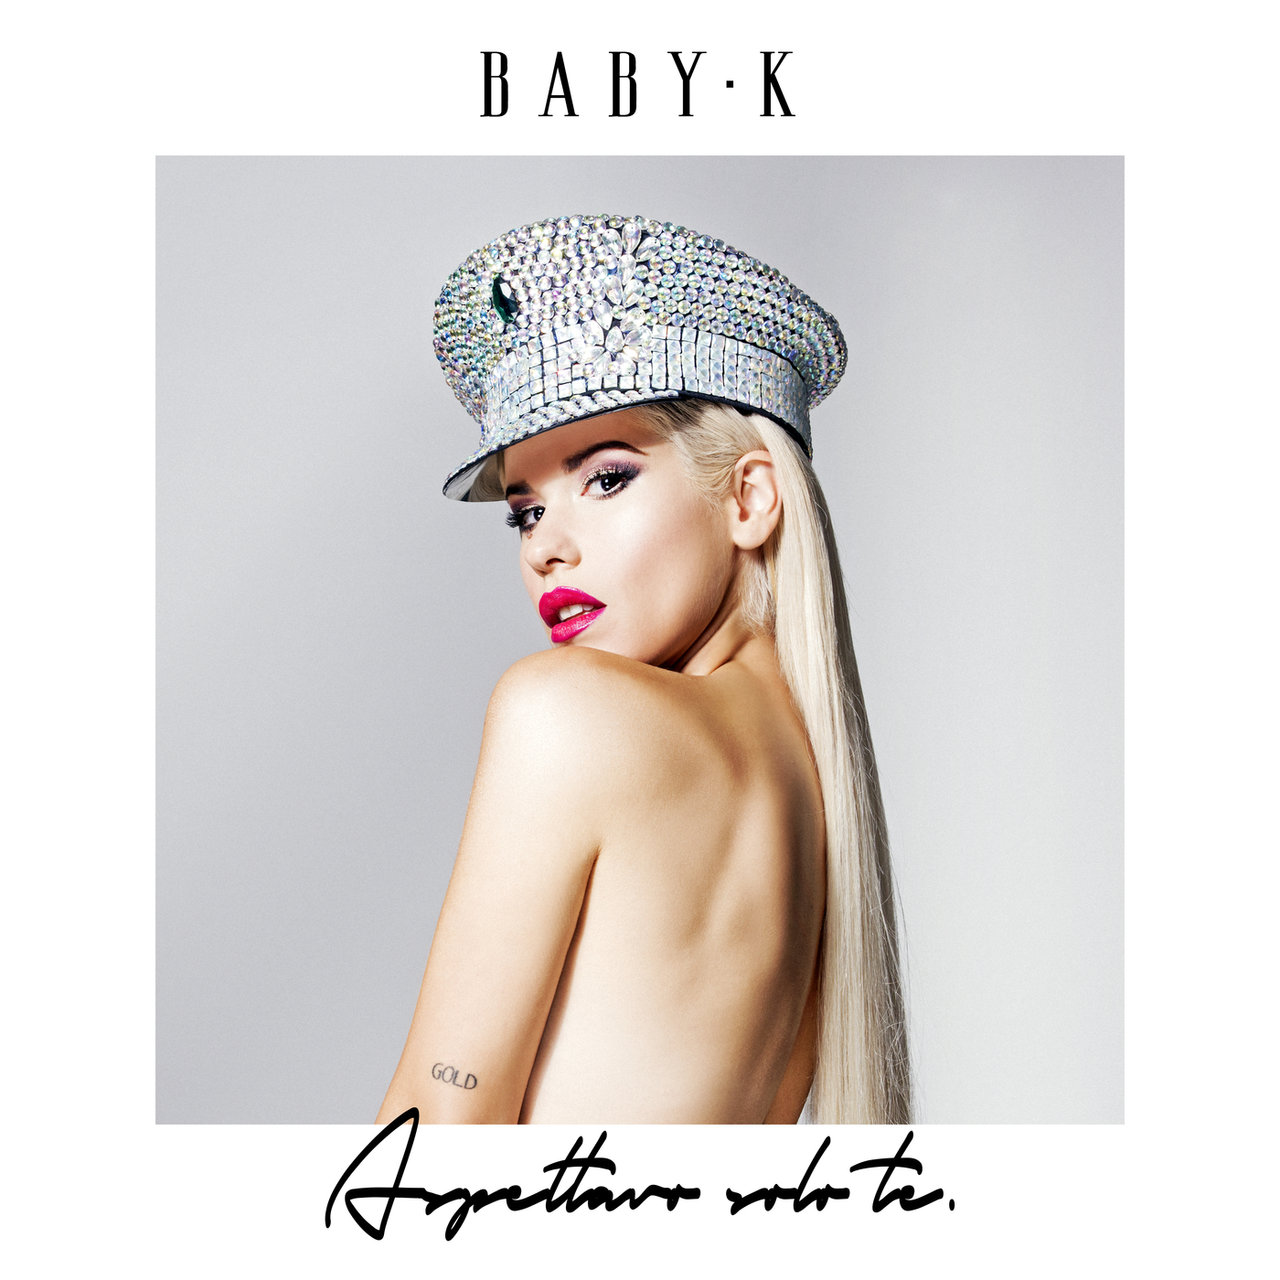 Baby K — Aspettavo solo te cover artwork